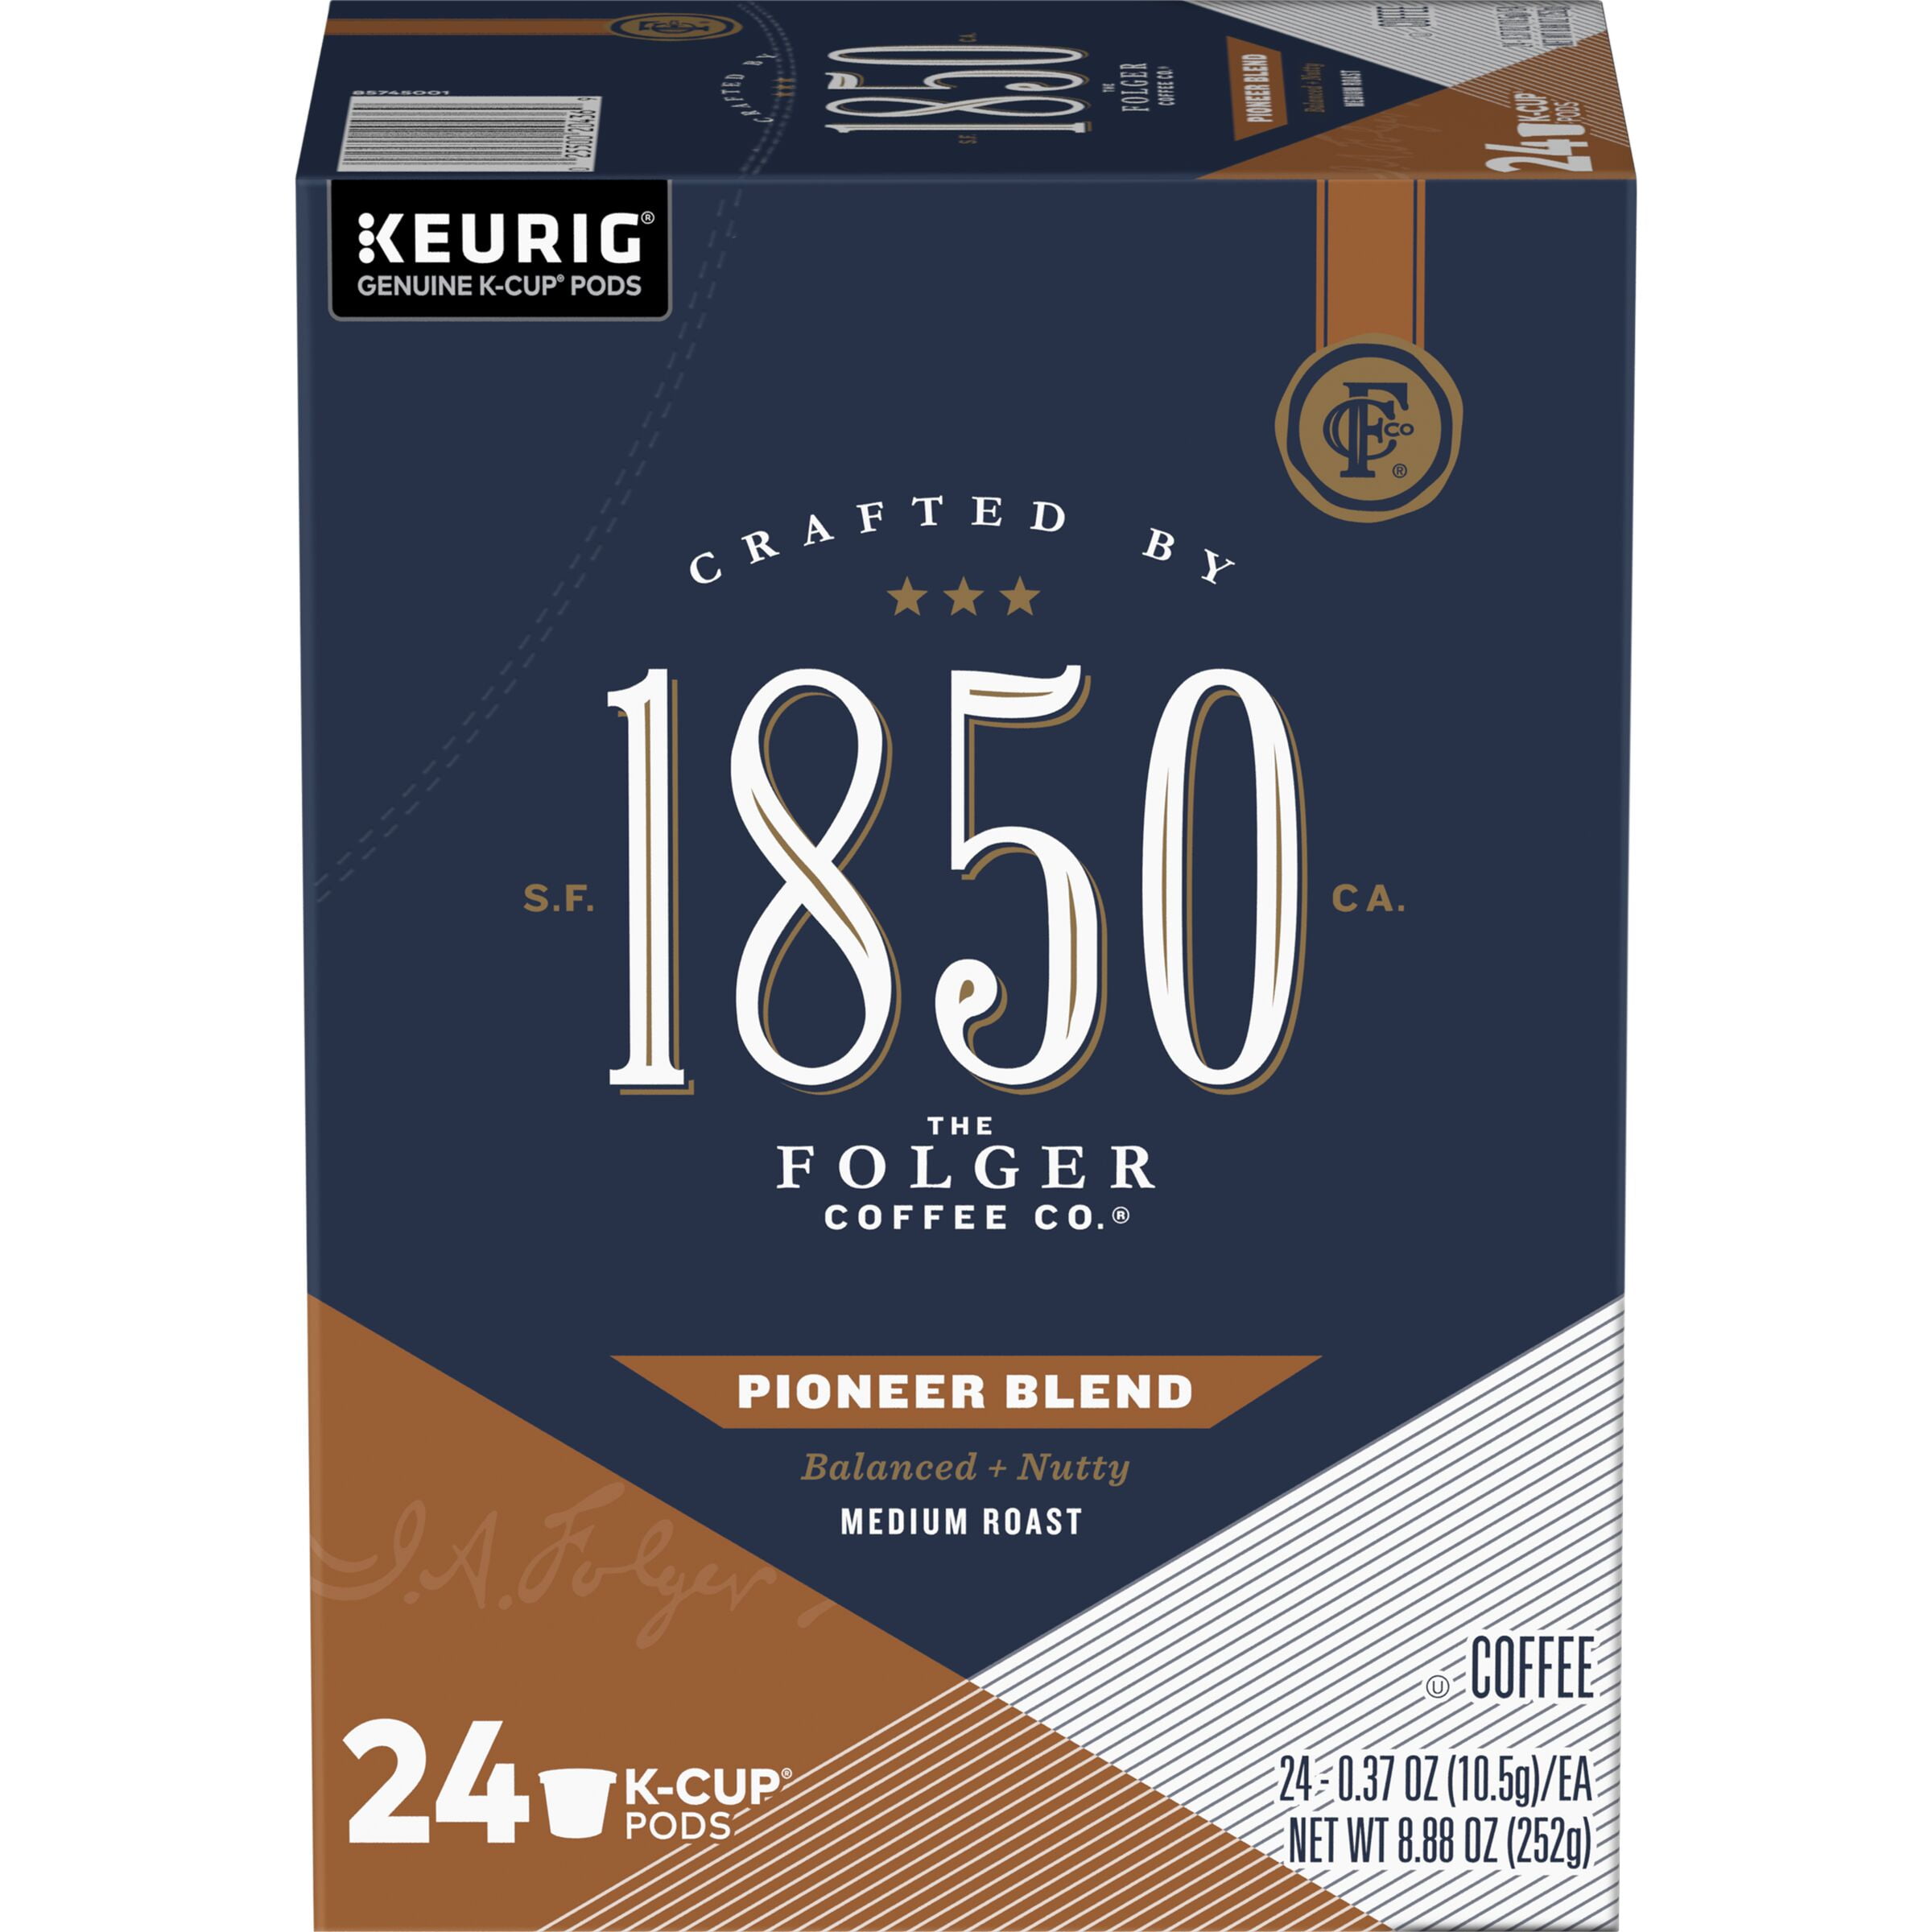 1850 Pioneer Blend Medium Roast Coffee, K-Cup Pods for Keurig Brewers, 24-Count